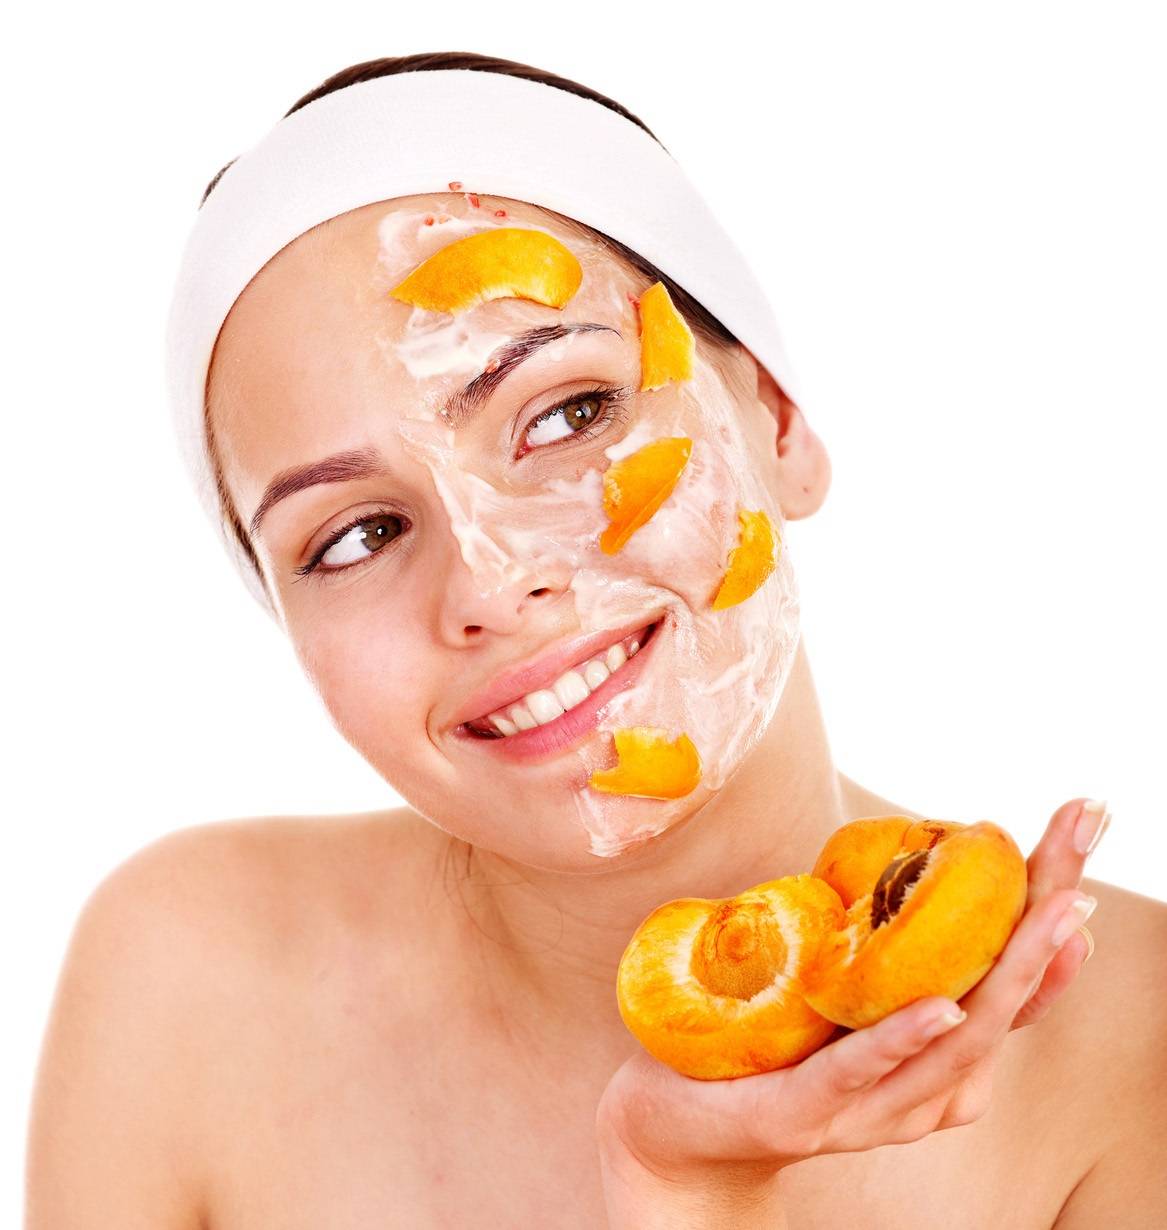 Косметические уходовые процедуры: массаж, маски, пилинг, чистка